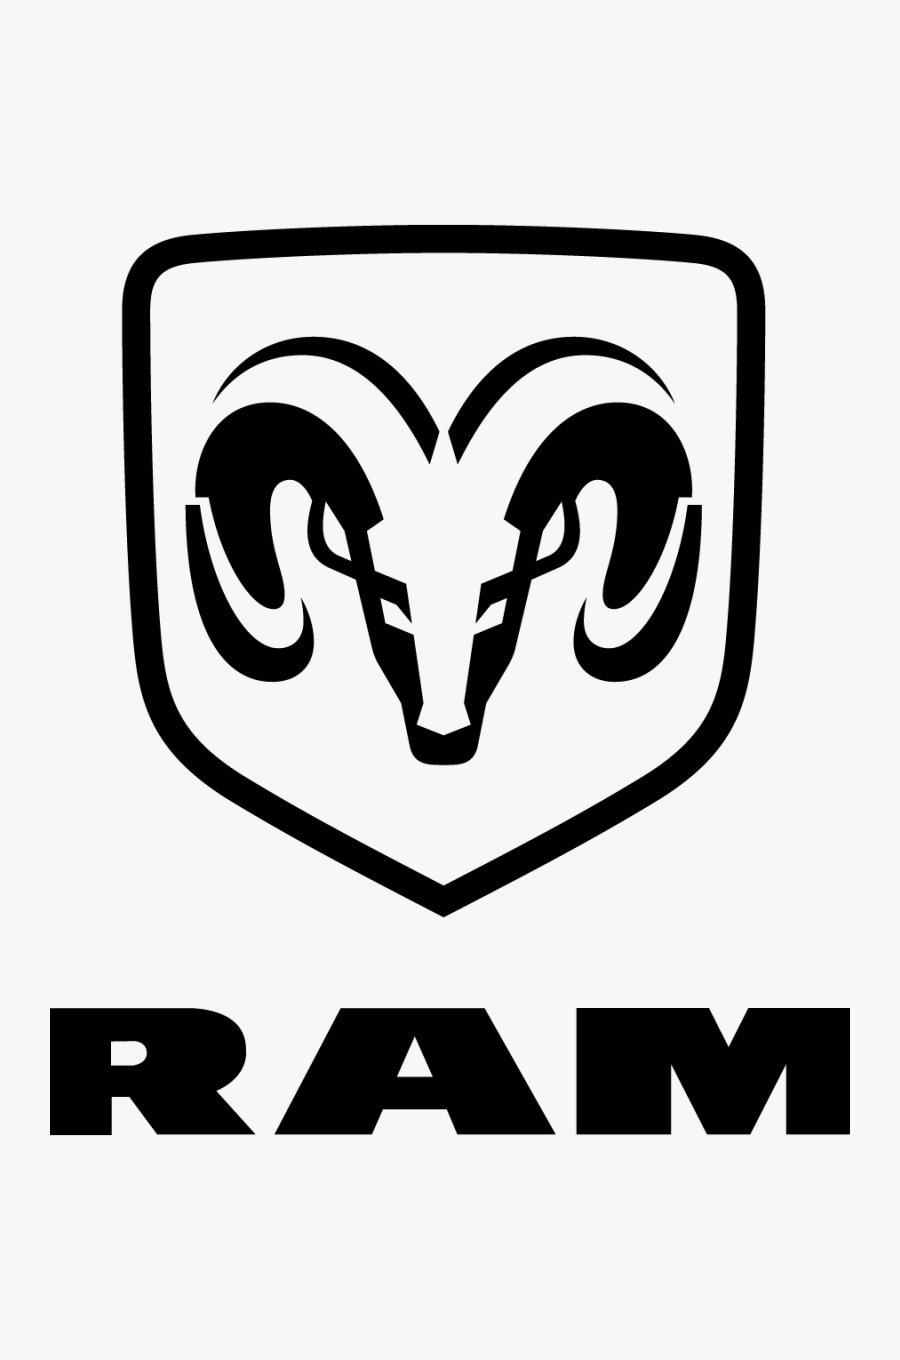 Ram Symbol Old Png Transparent Images Vector Clipart - Dodge Ram Logo Vector, Transparent Clipart